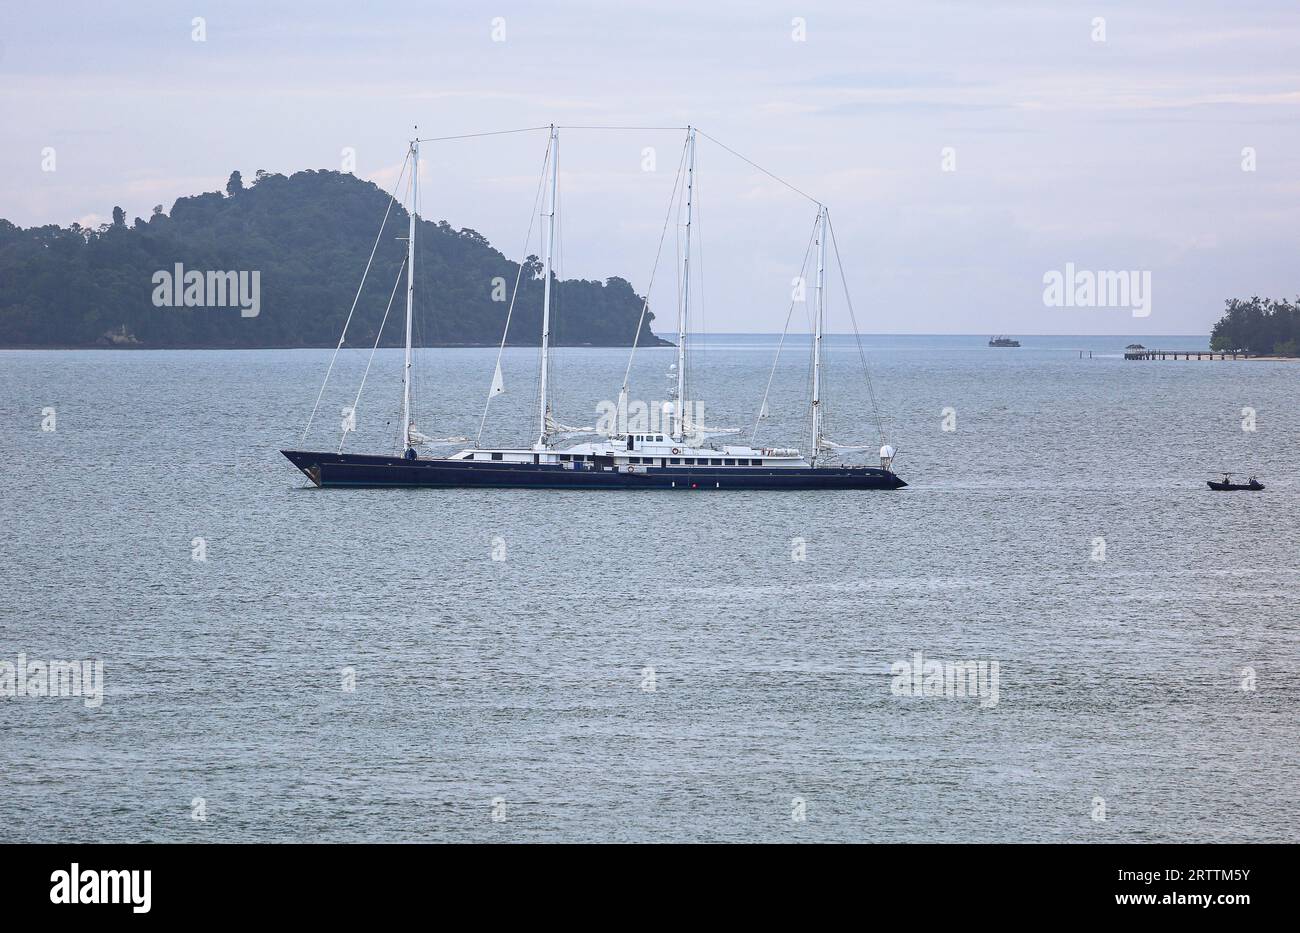 Le yacht à voile de luxe Phocea, qui appartenait autrefois au magnat français Bernard tapie, a ancré près de Langkawi, en Malaisie, où il a brûlé et coulé peu de temps après Banque D'Images